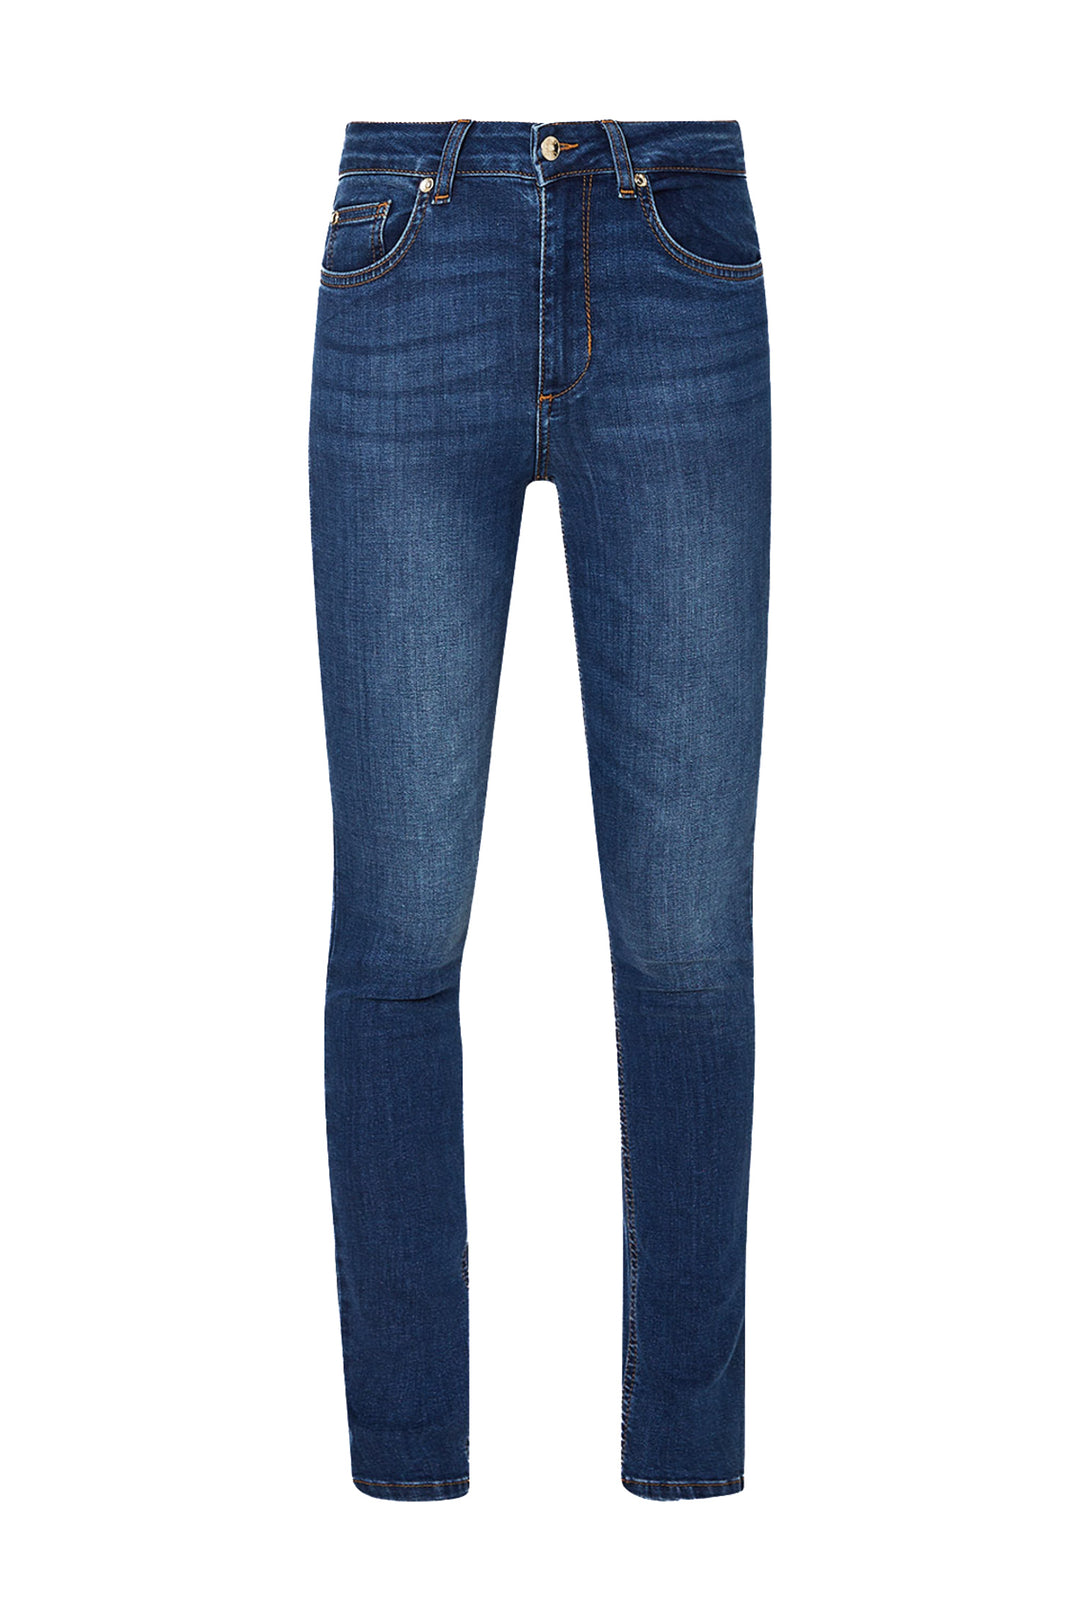 LIU JO Jeans skinny bottom up in denim di cotone stretch lavaggio used - Mancinelli 1954